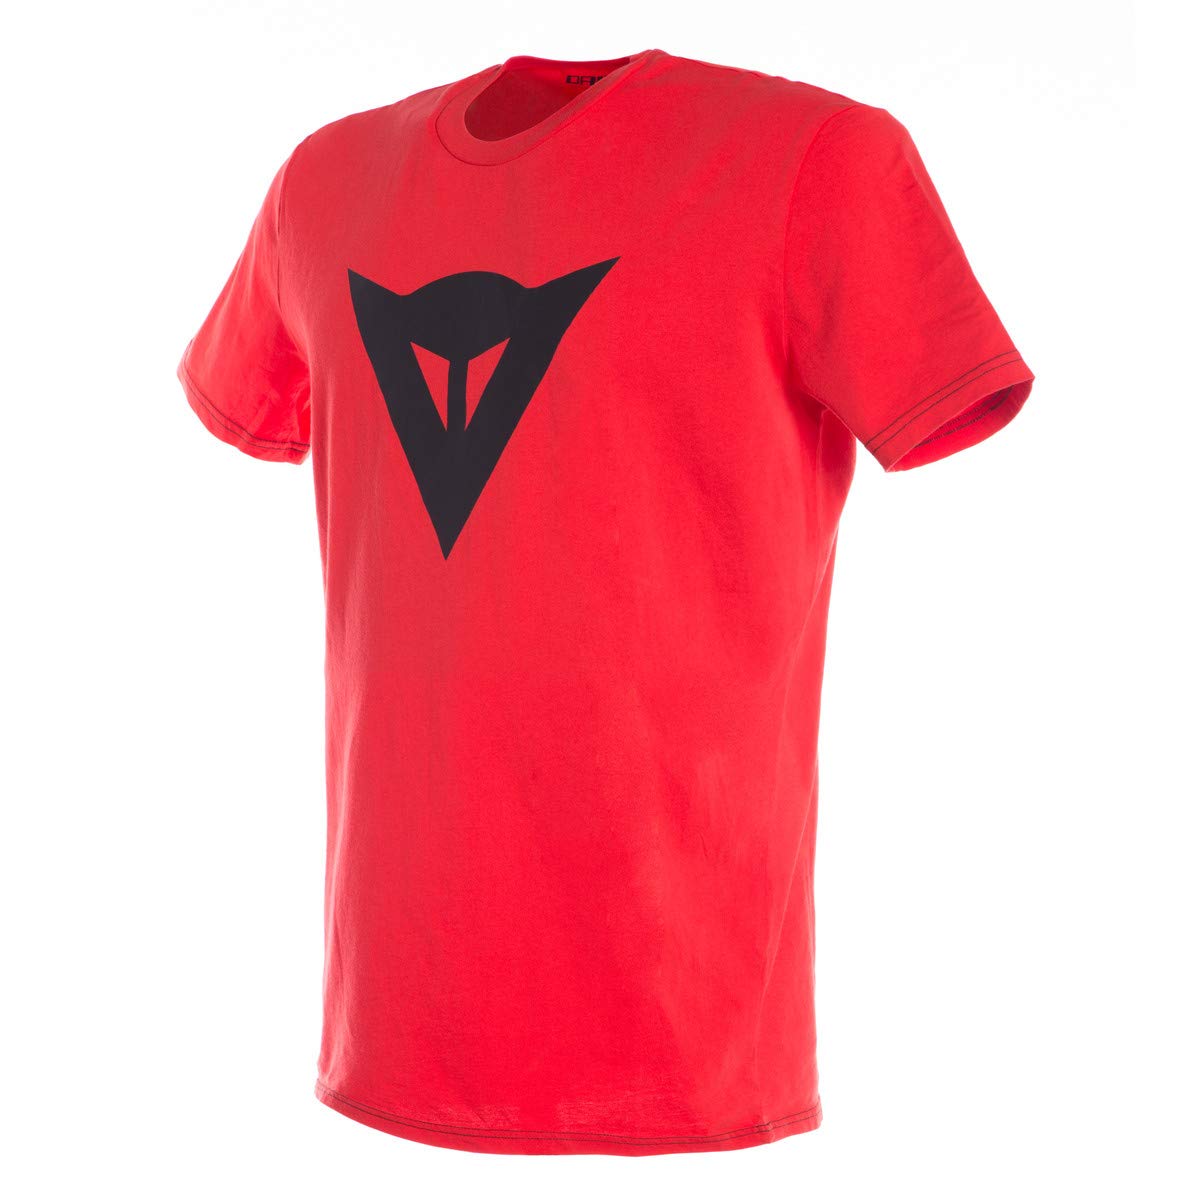 Dainese - Speed Demon T-Shirt, Herren T-Shirt mit Kurzen Ärmeln, Trikot mit Speed Demon Logo für Erwachsene, aus 100% Baumwolle, Weich und Cool, Klassischen Stil, Rot/Schwarz von Dainese